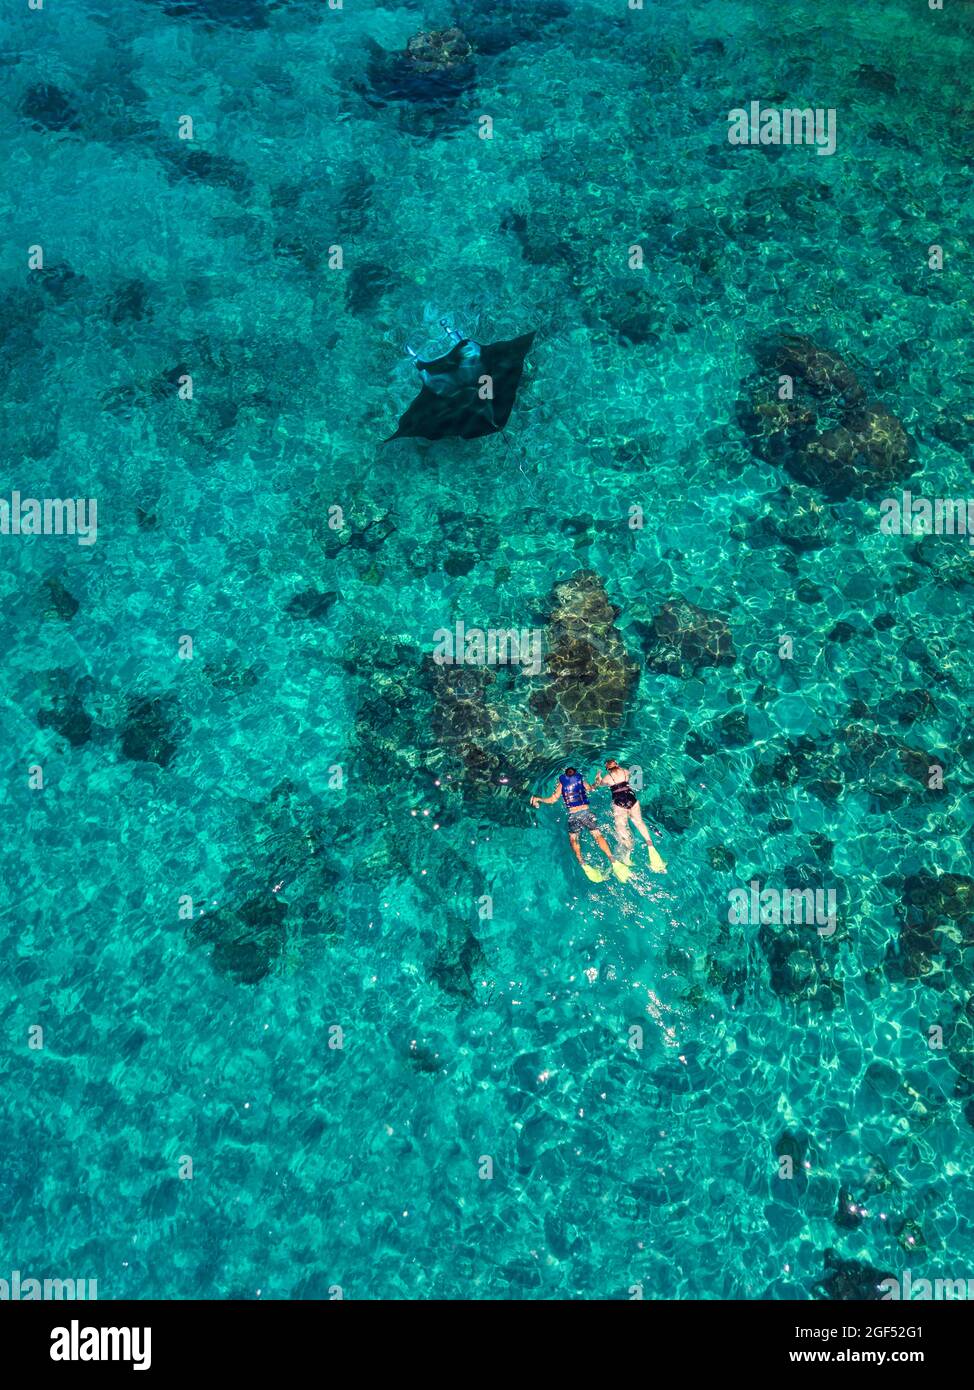 Vista aerea di due persone che nuotano vicino a Manta ray nelle acque turchesi dell'Oceano Pacifico Foto Stock